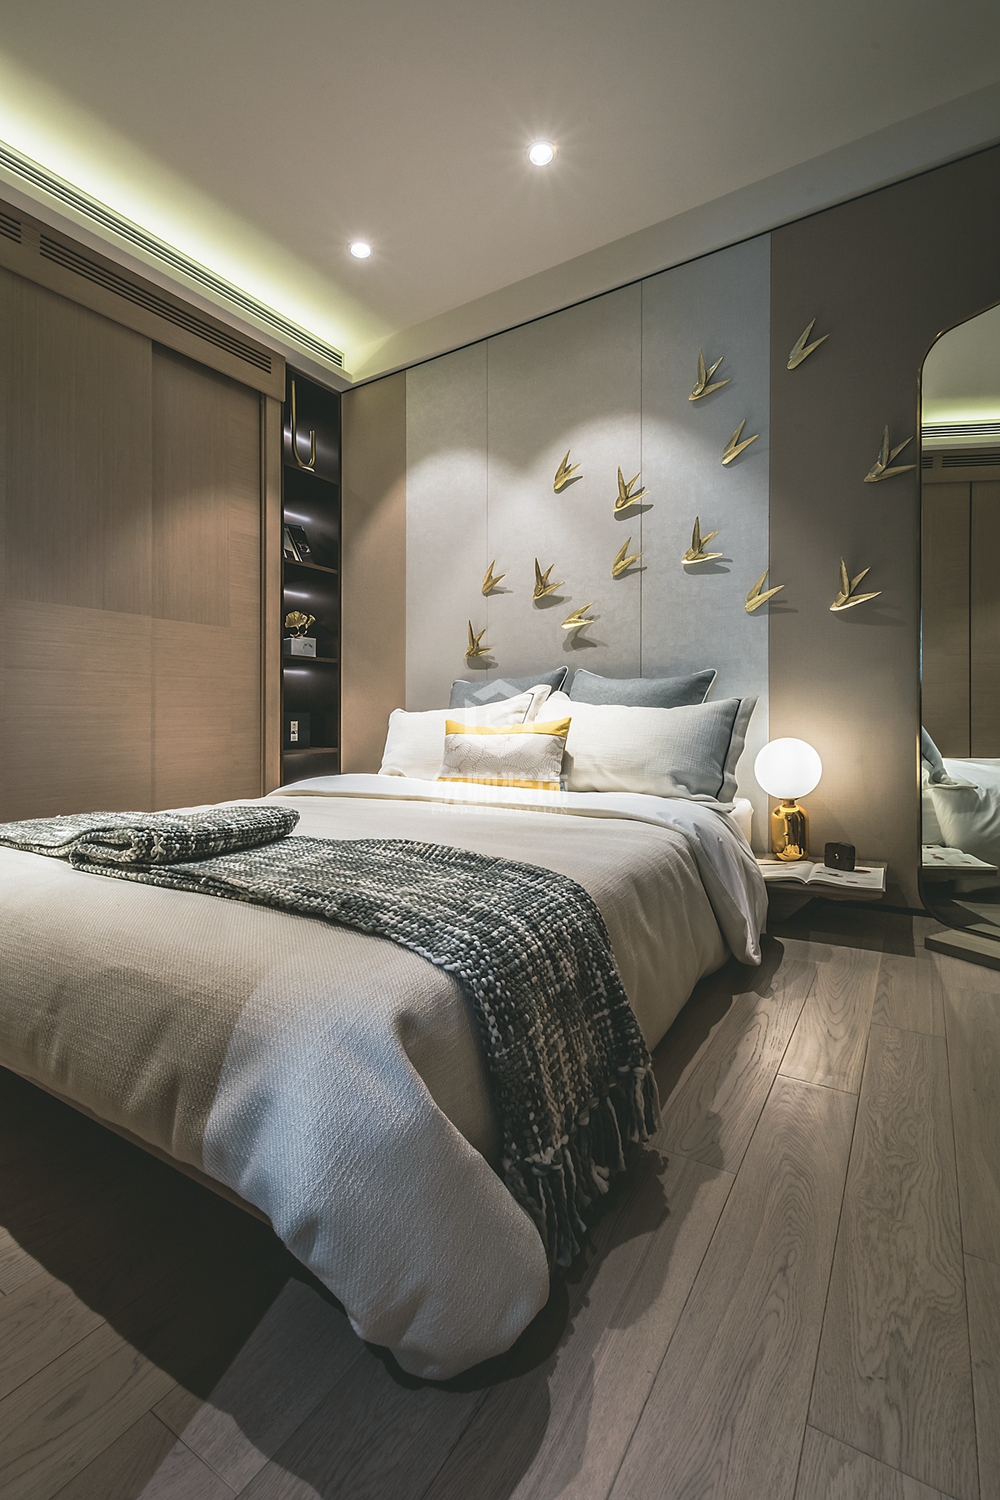 普陀区上海恒盛豪庭70平方现代简约风格一室两厅卧室装修效果图